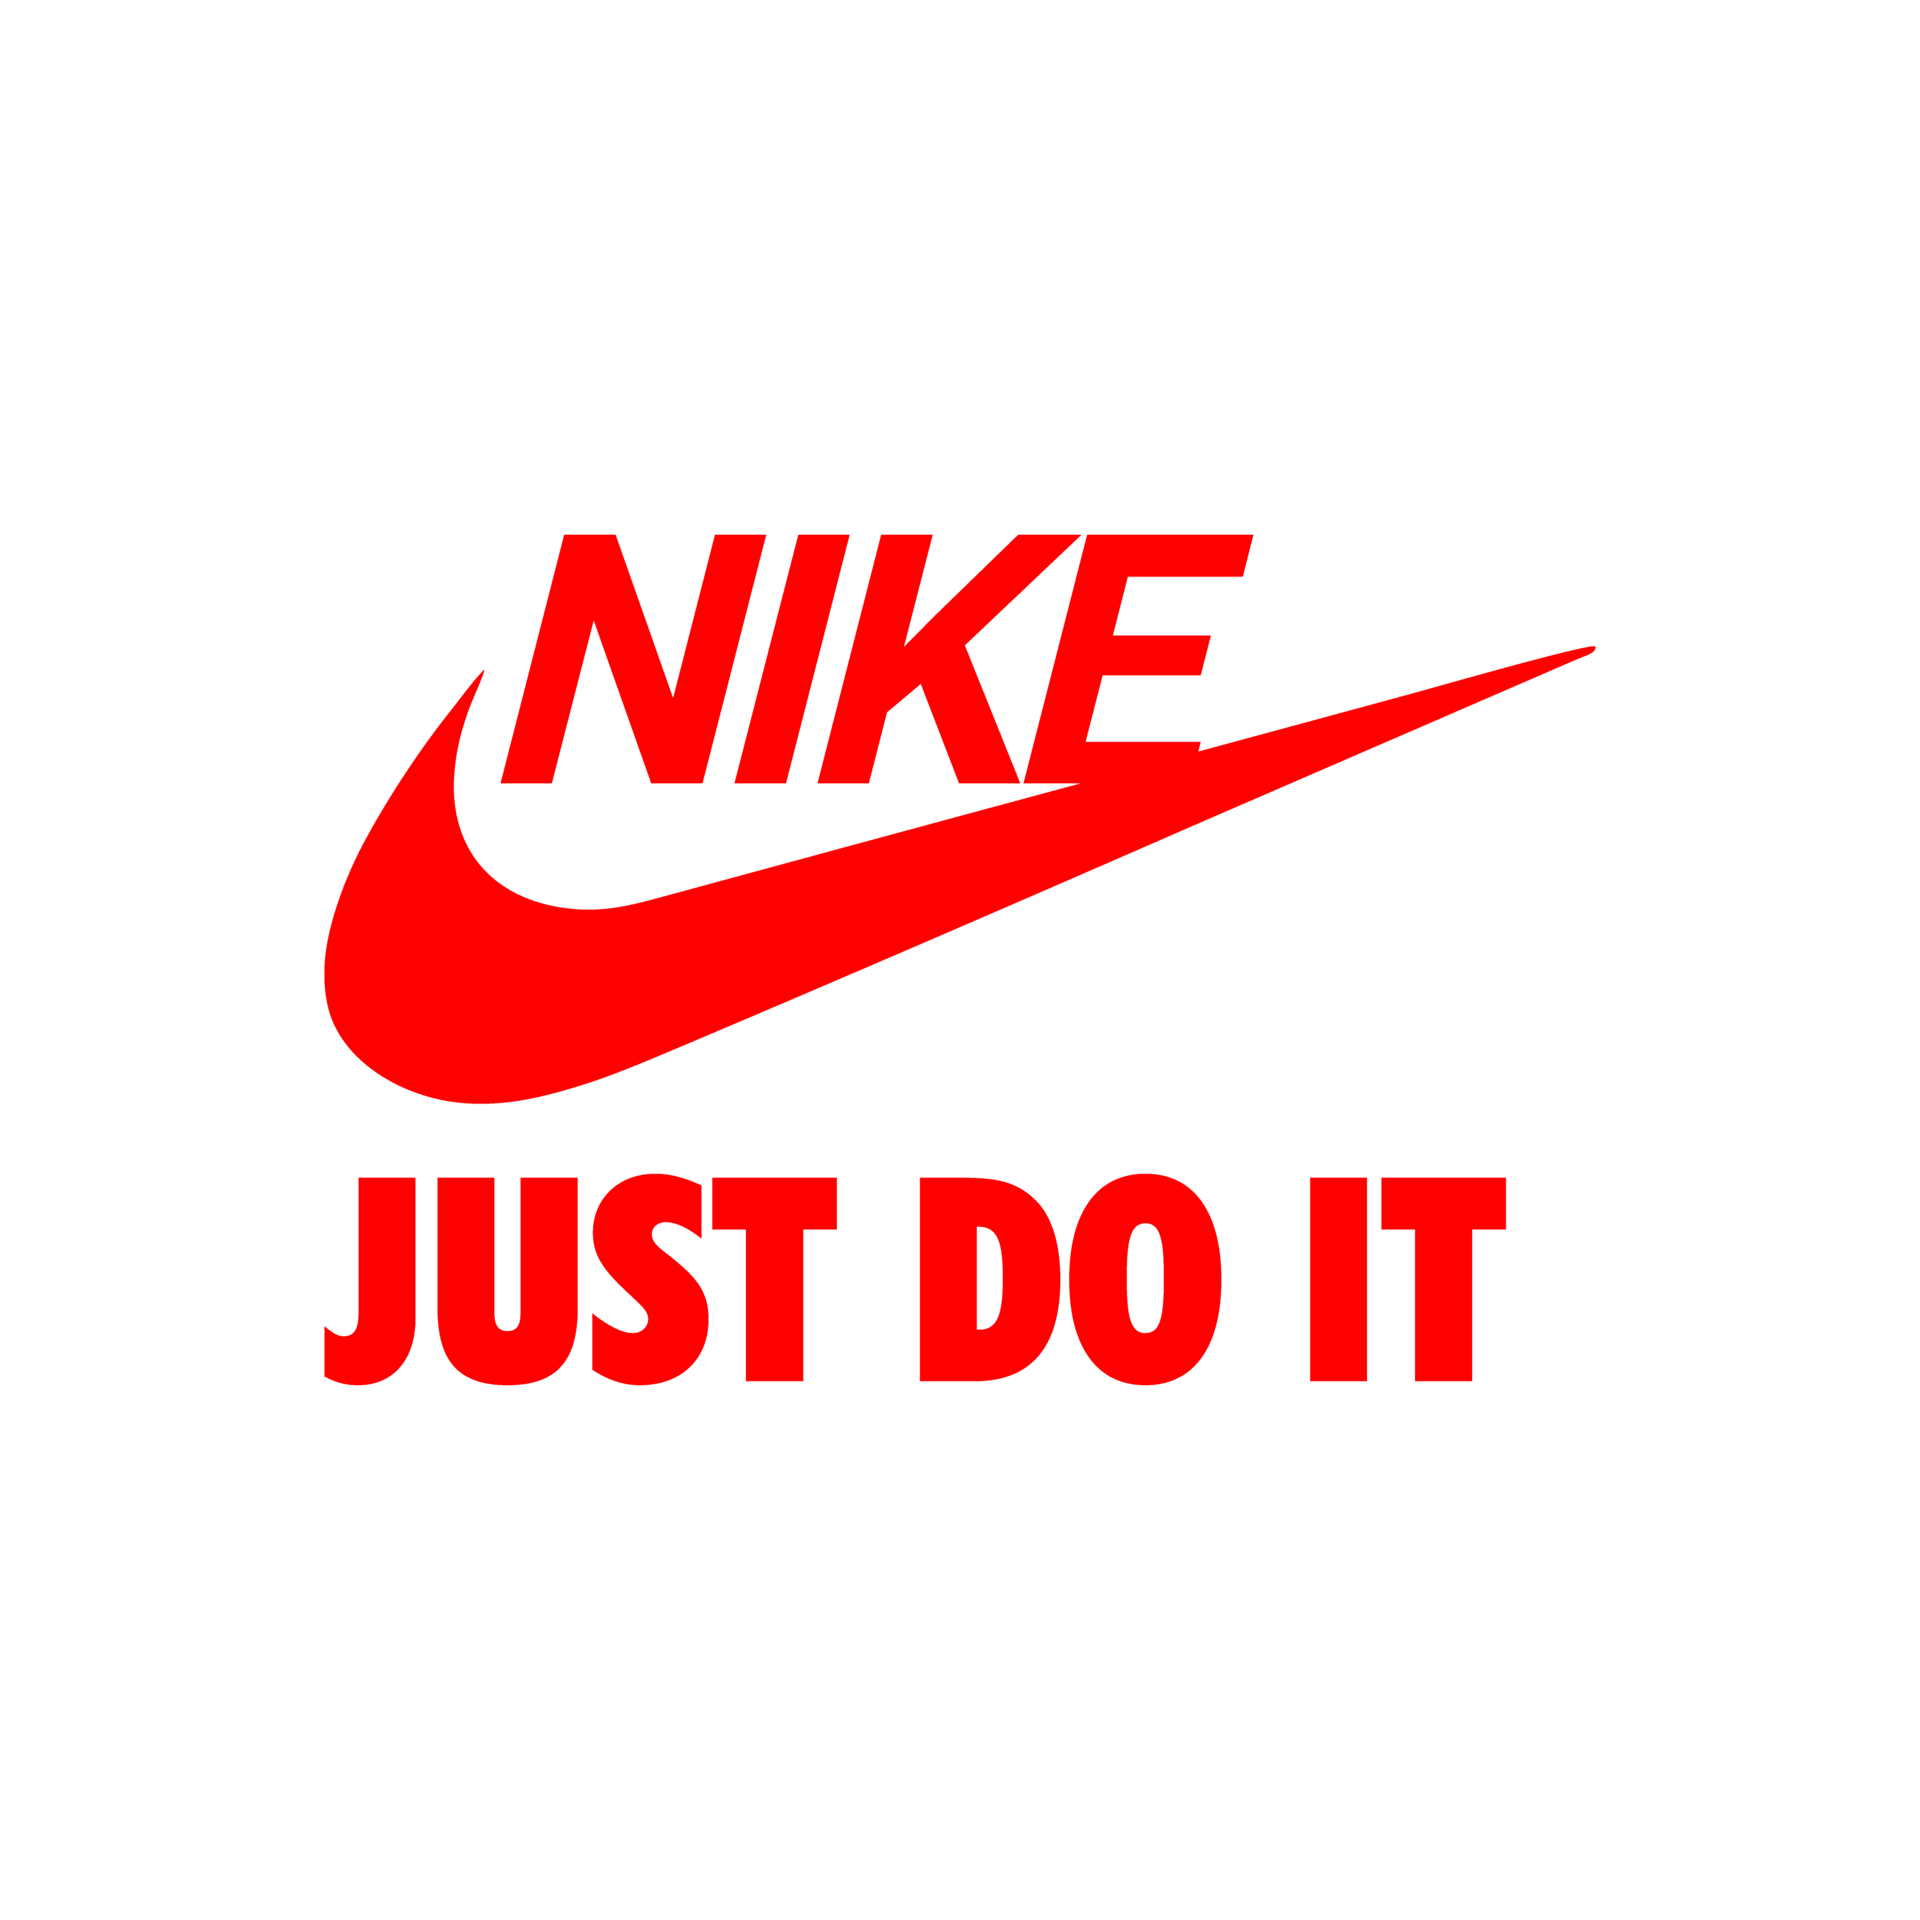 Nike do it logo PNG 22100811